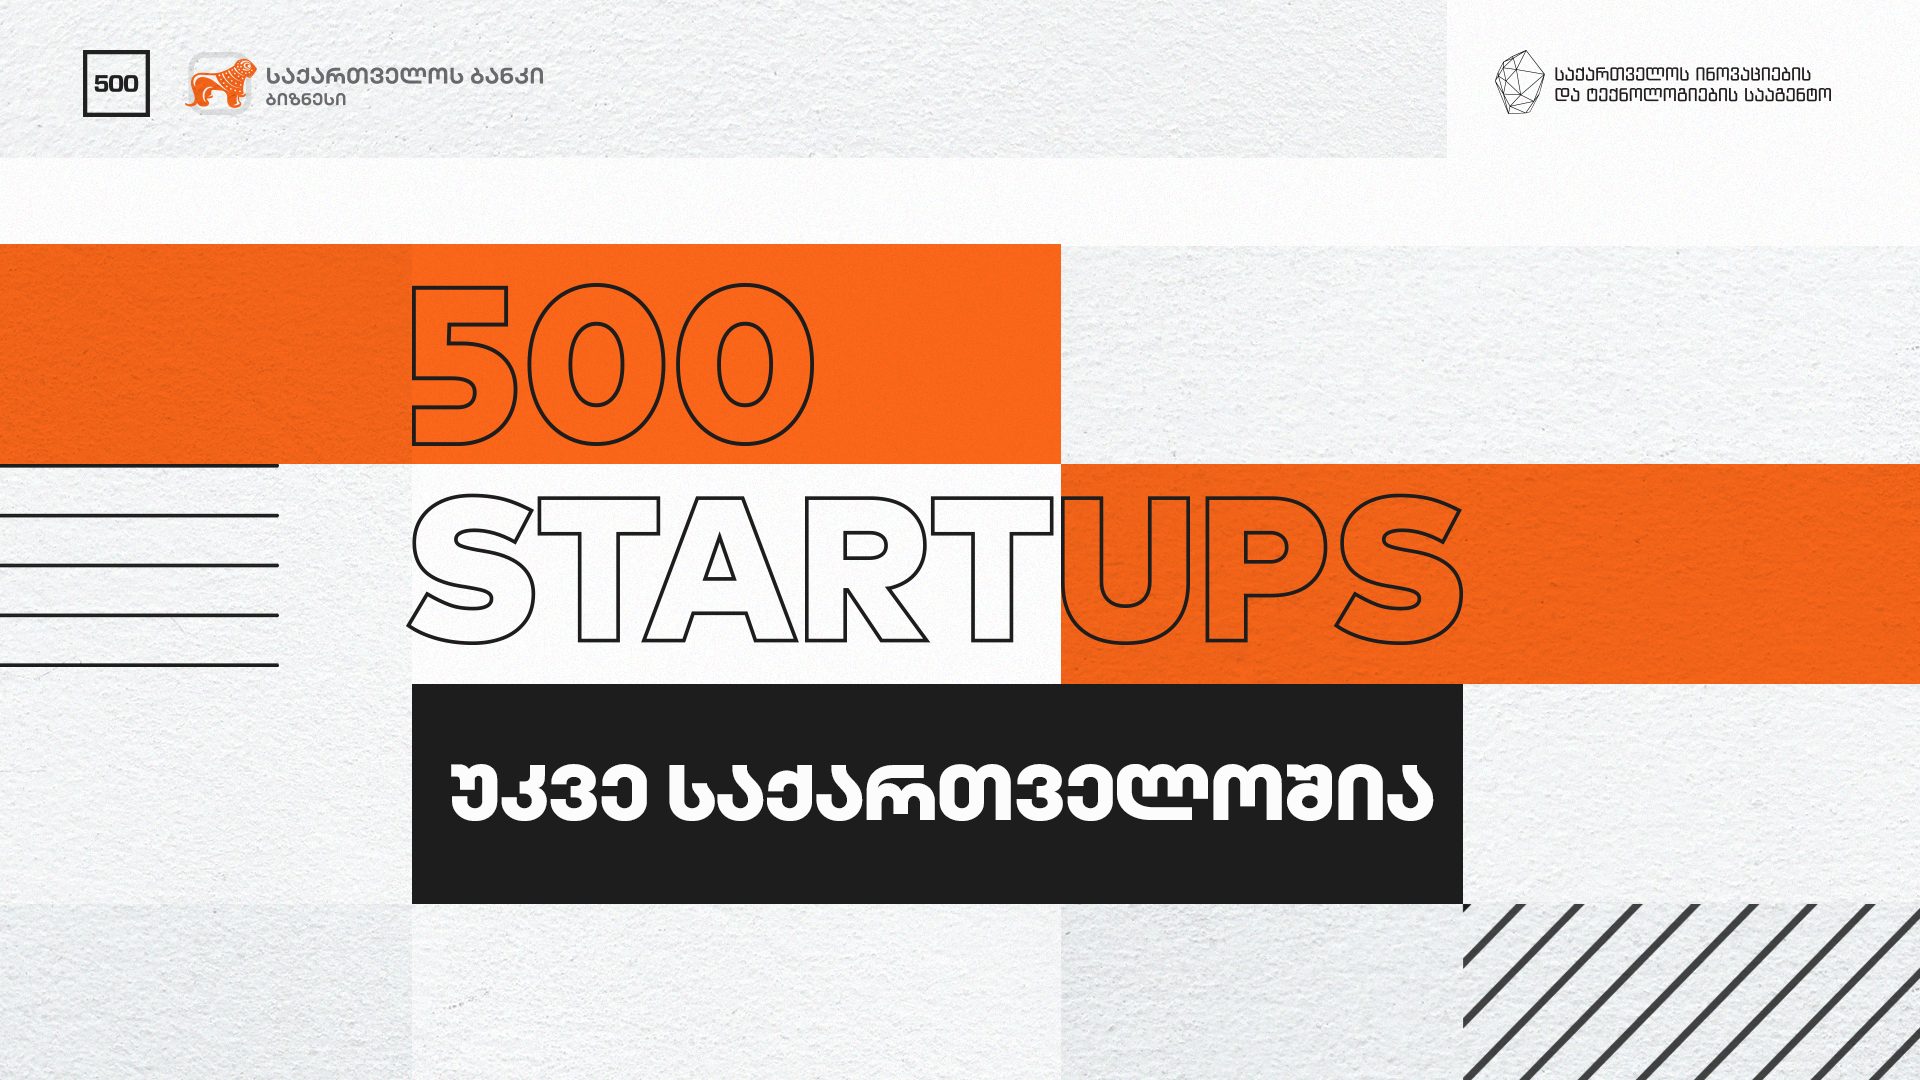 Photo of საქართველოს ბანკის მხარდაჭერით საქართველოში უმსხვილესი ბიზნეს აქსელერატორი 500 Startups შემოდის